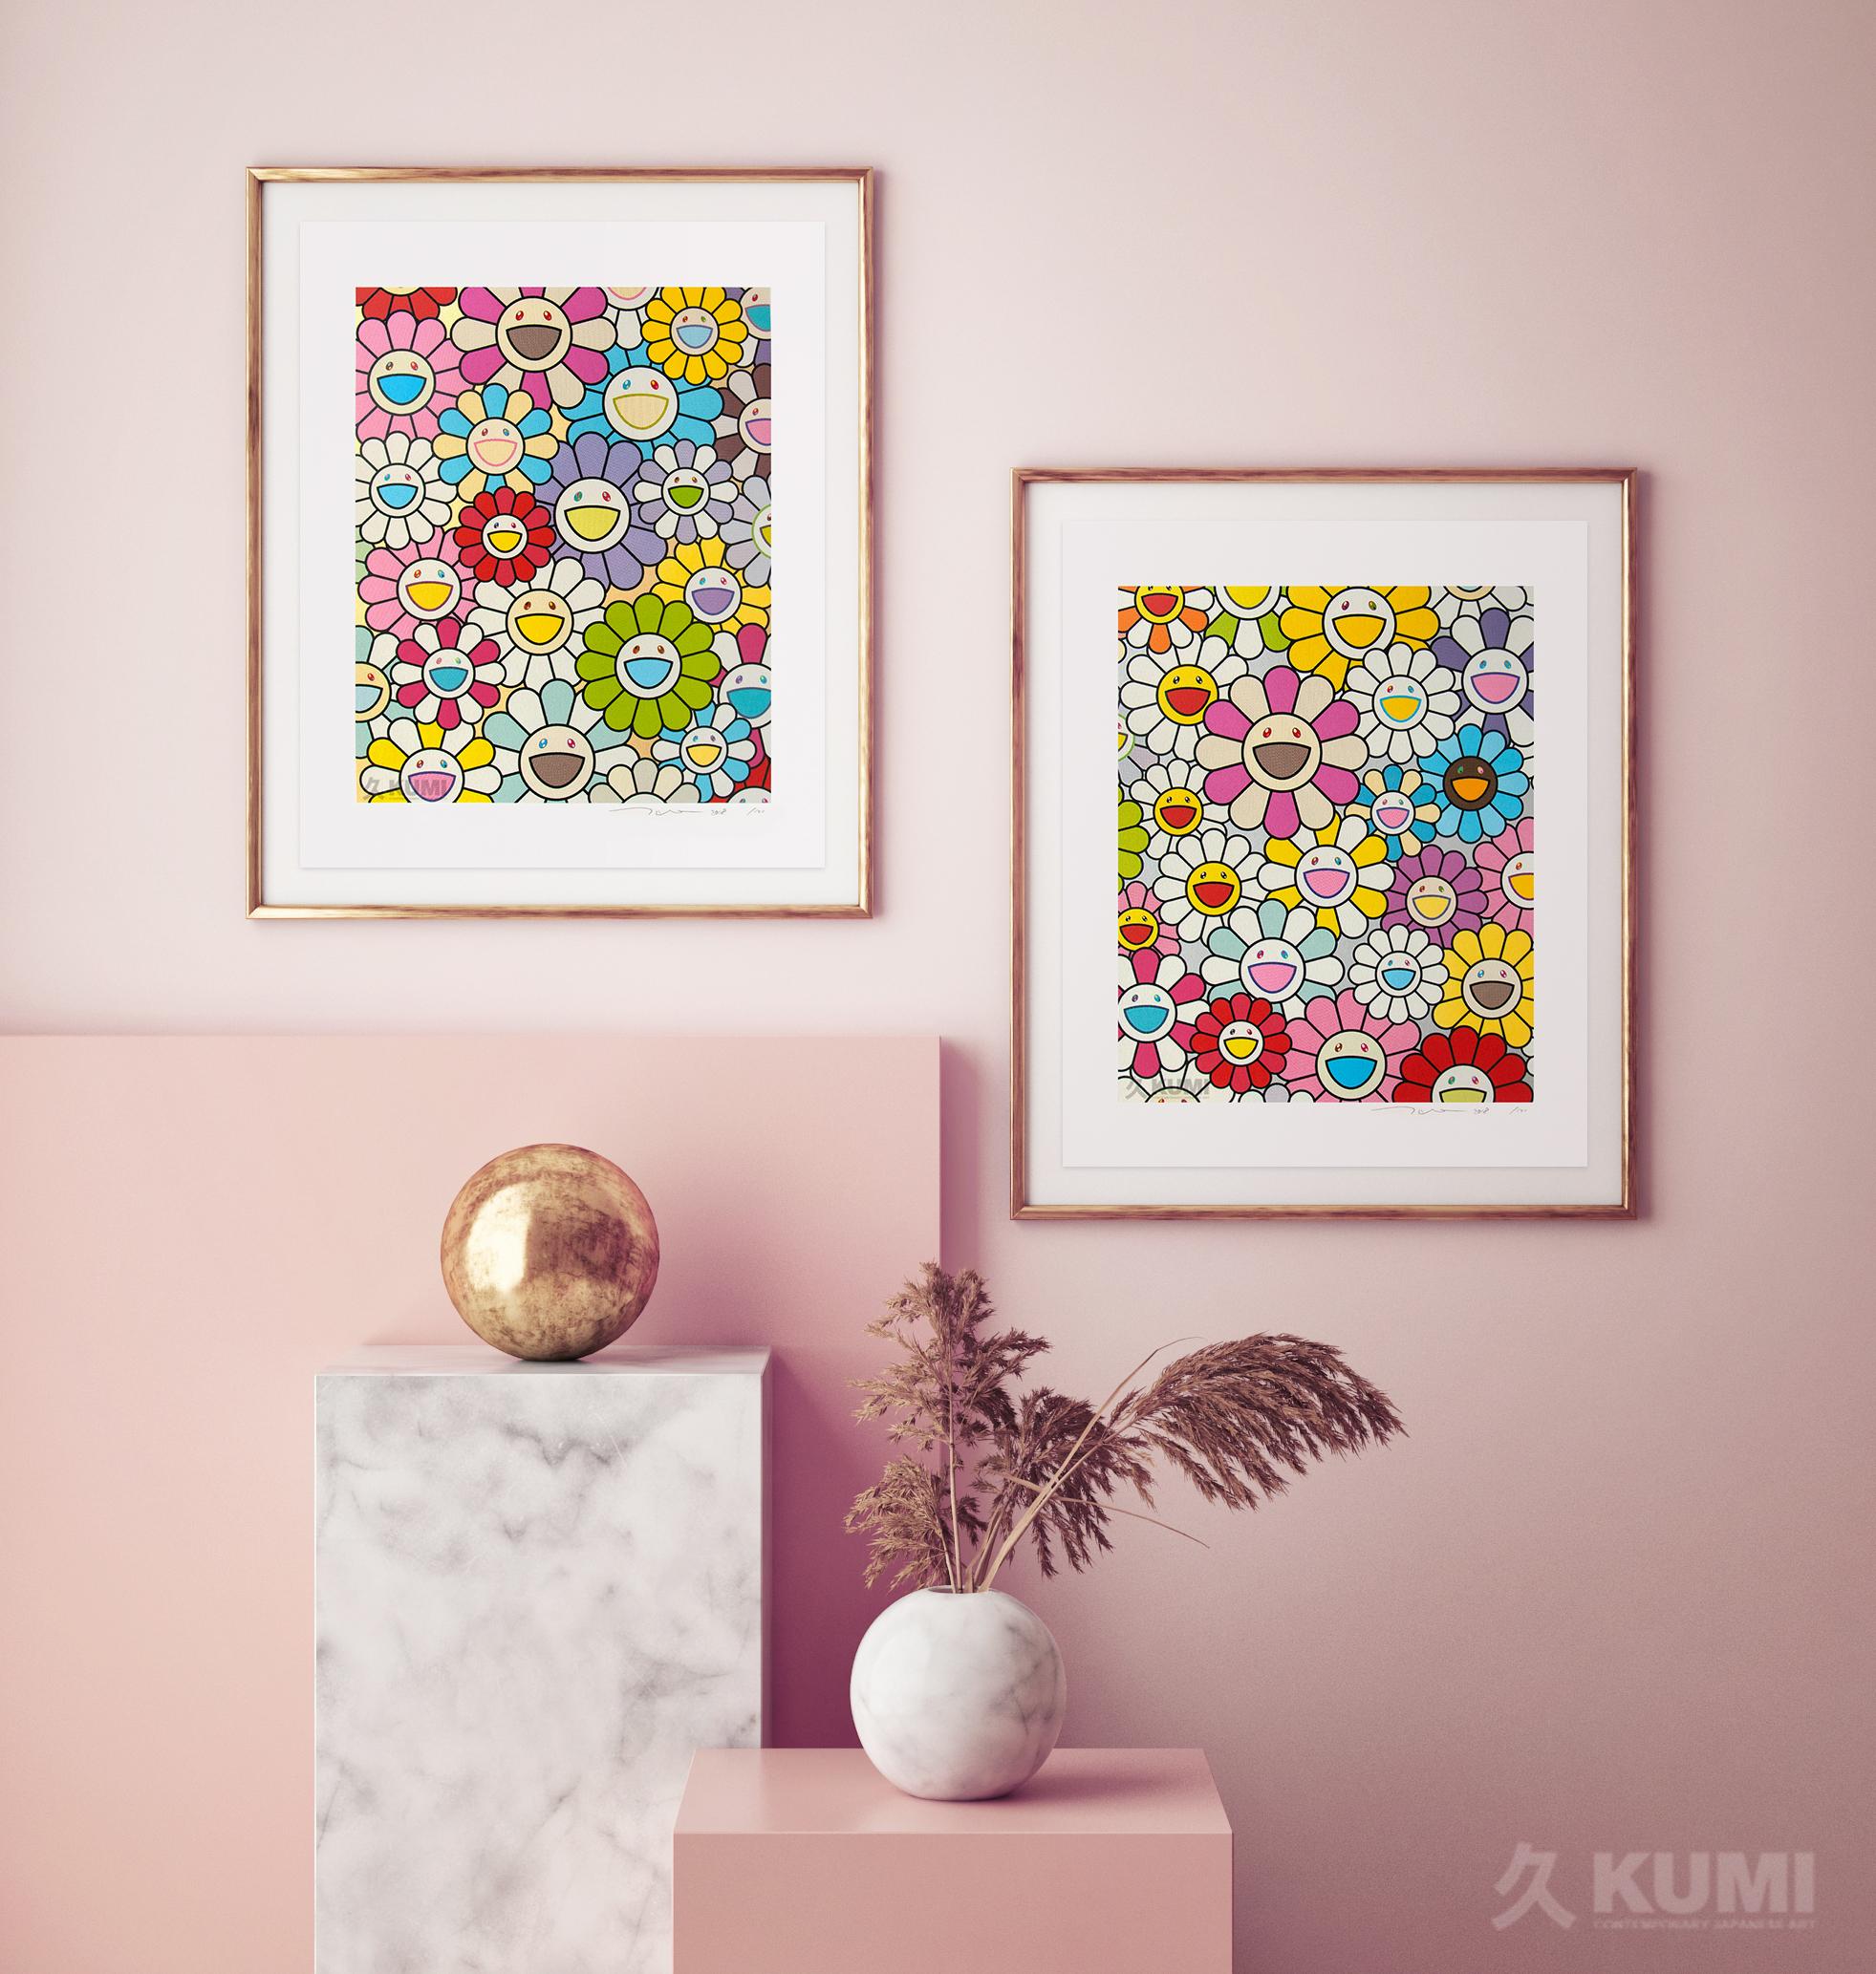 Une petite peinture de fleurs : rose, violet et bien d'autres couleurs (Ed 100) Platine. - Print de Takashi Murakami